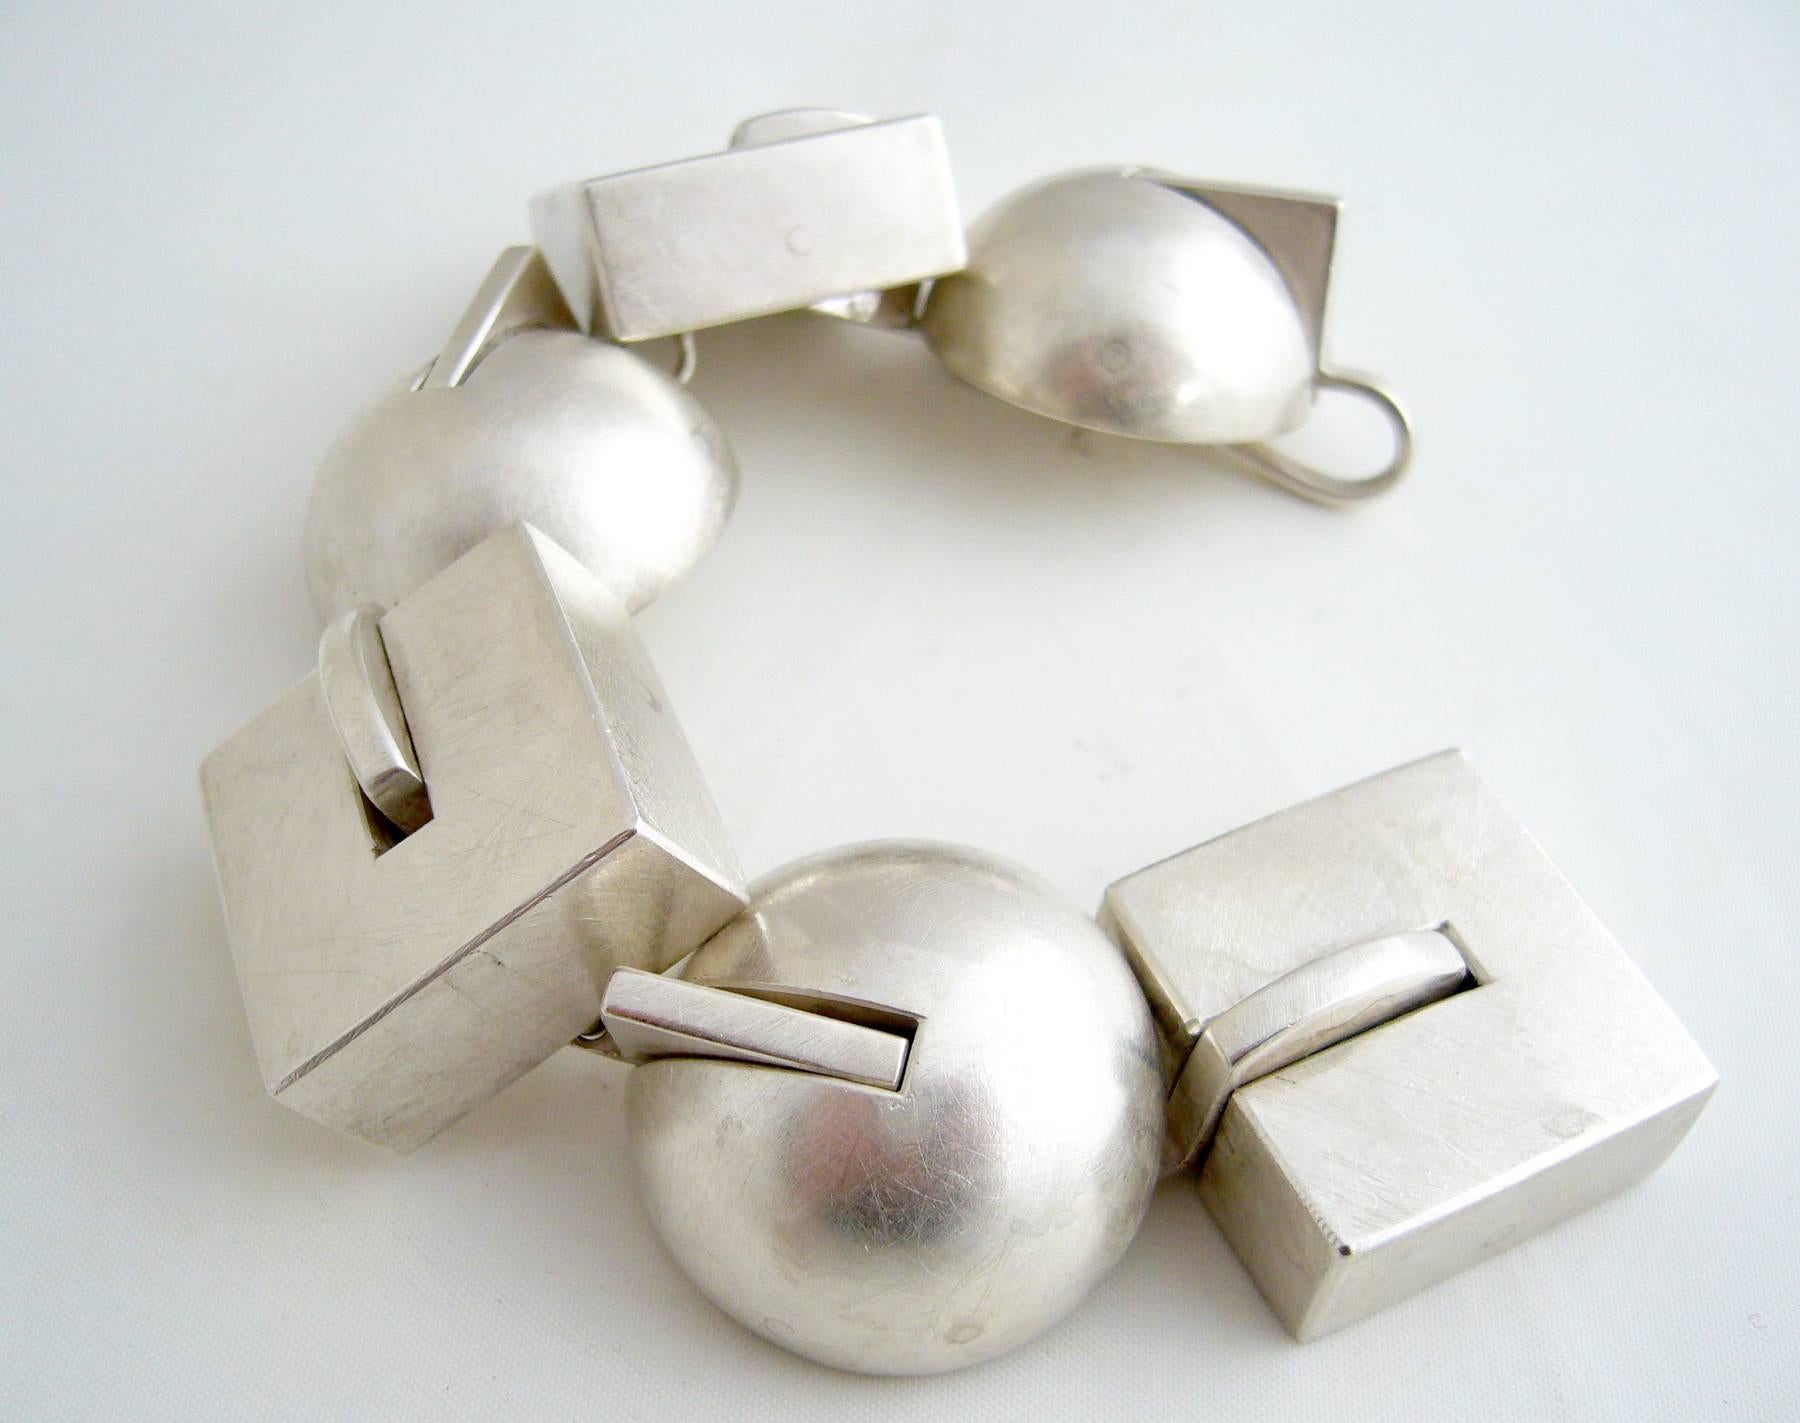 Brushed sterling silver post modernist bracelet with geometric elements by Sandra Enterline, circa 1992.  Bracelet measures 7